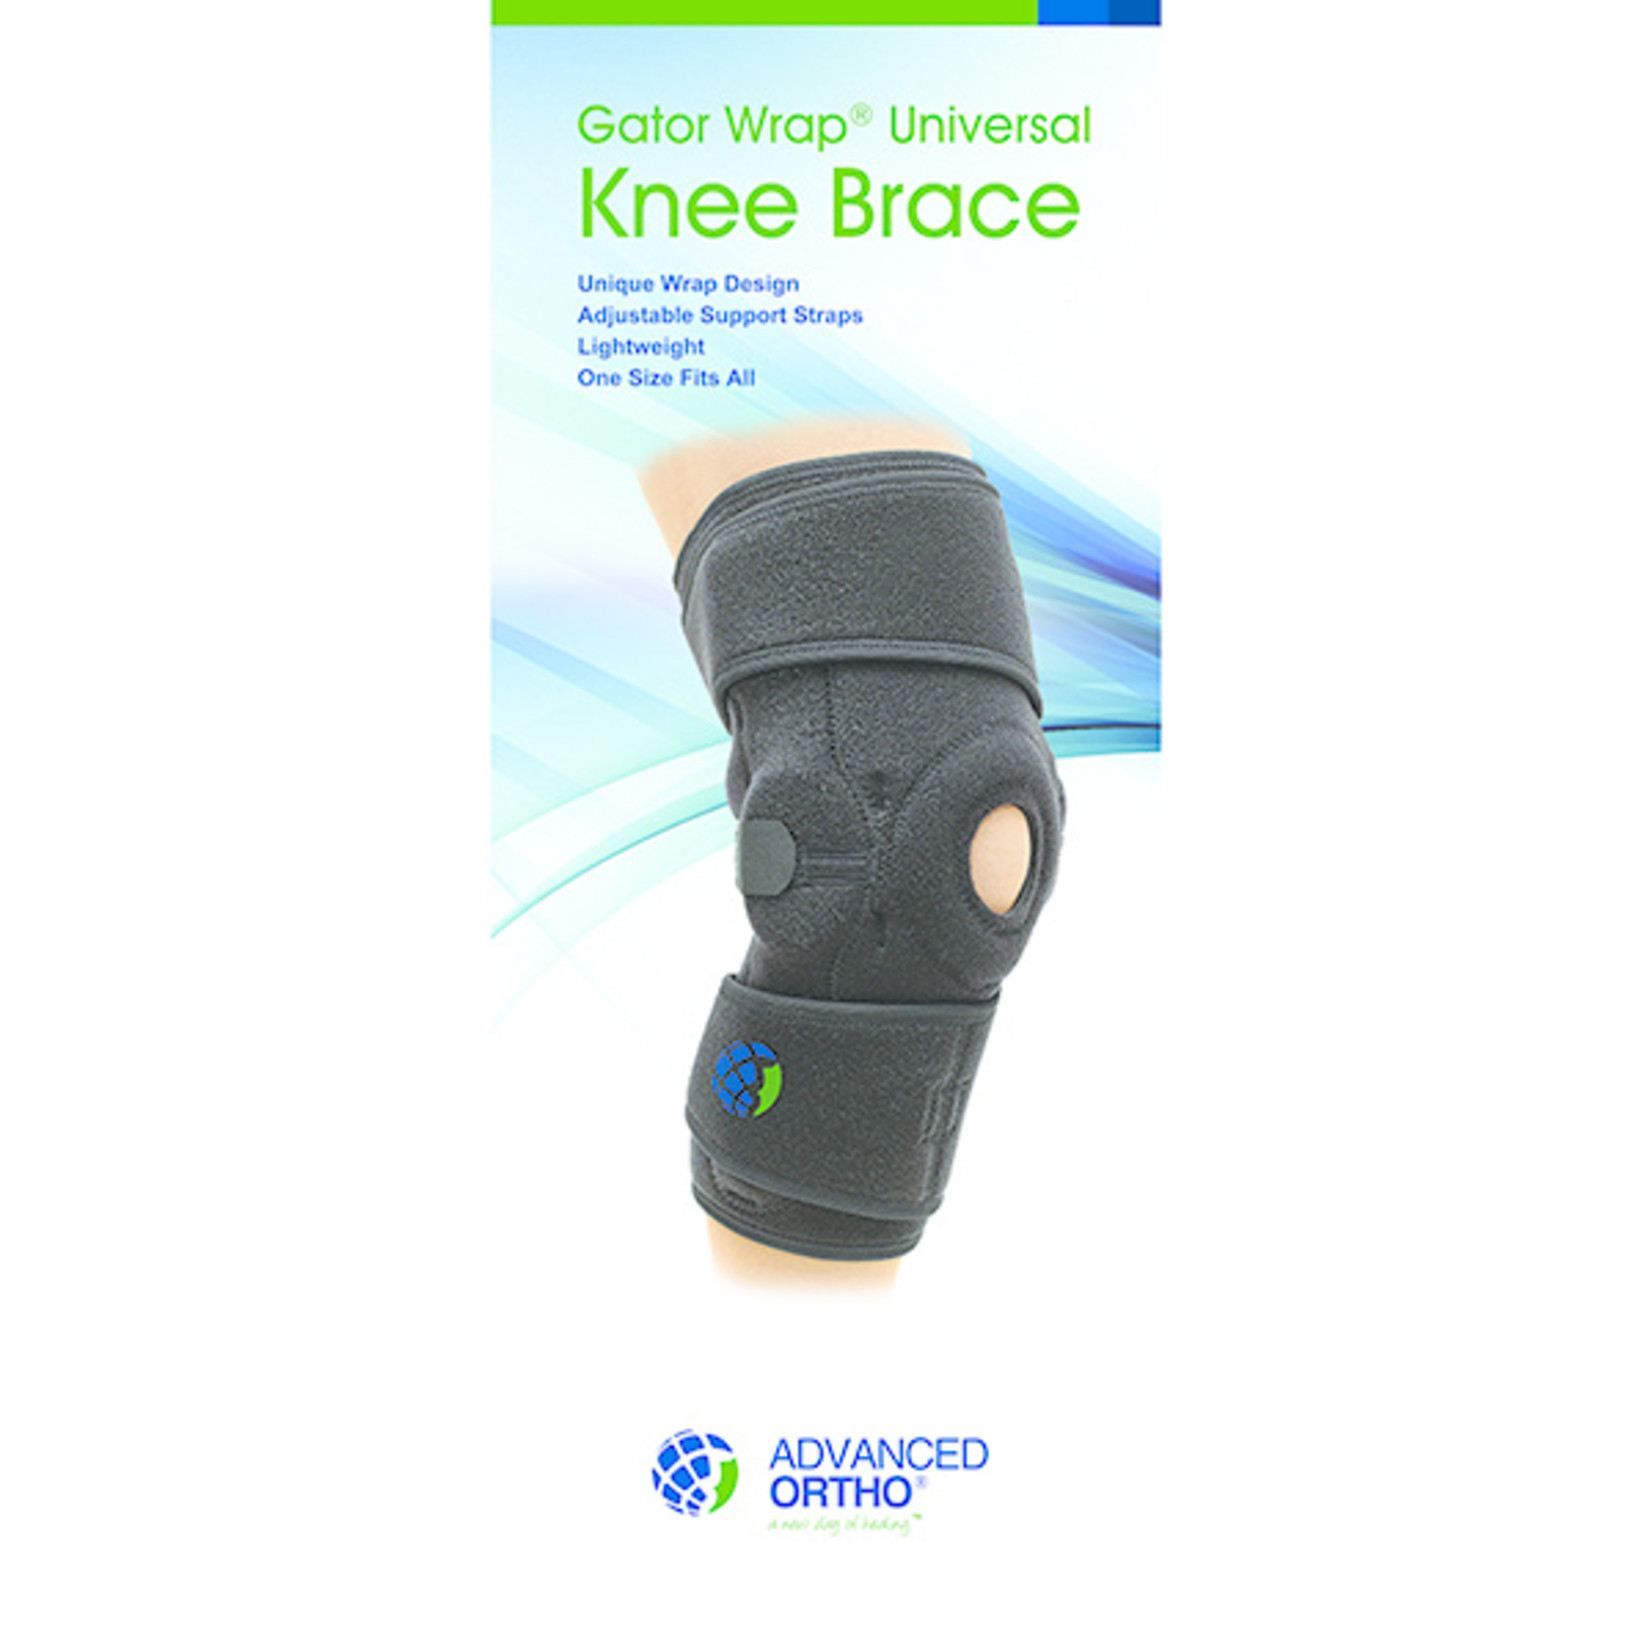 Hinged Knee Brace - Orthomedics